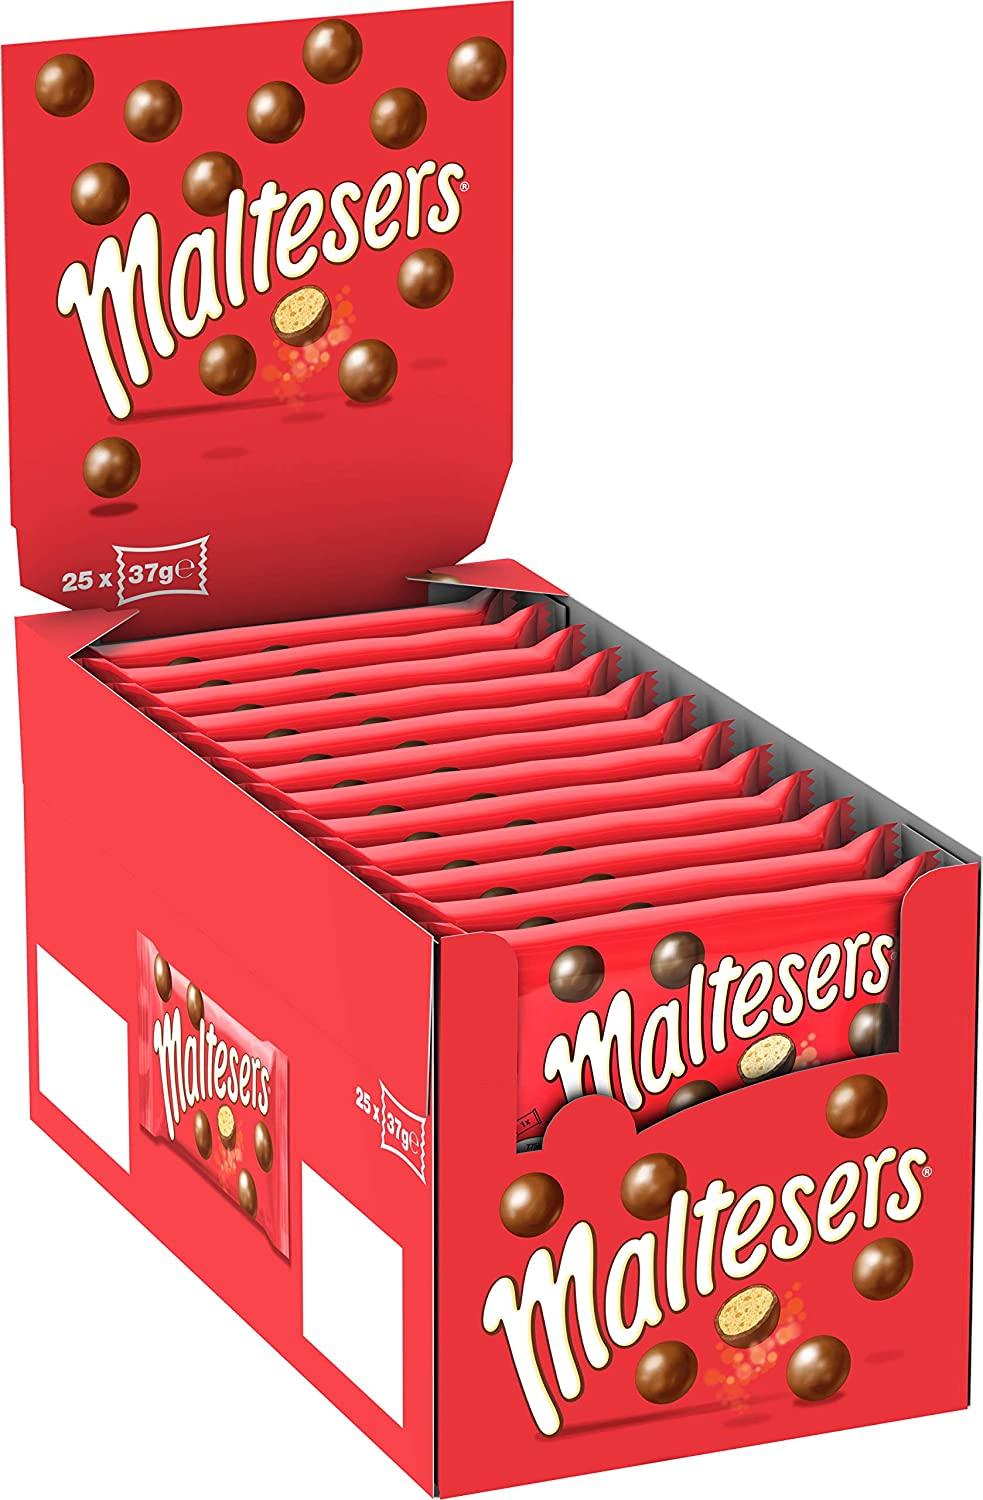 Maltesers - Case of 25x37g Sharing Packs - Vending Superstore